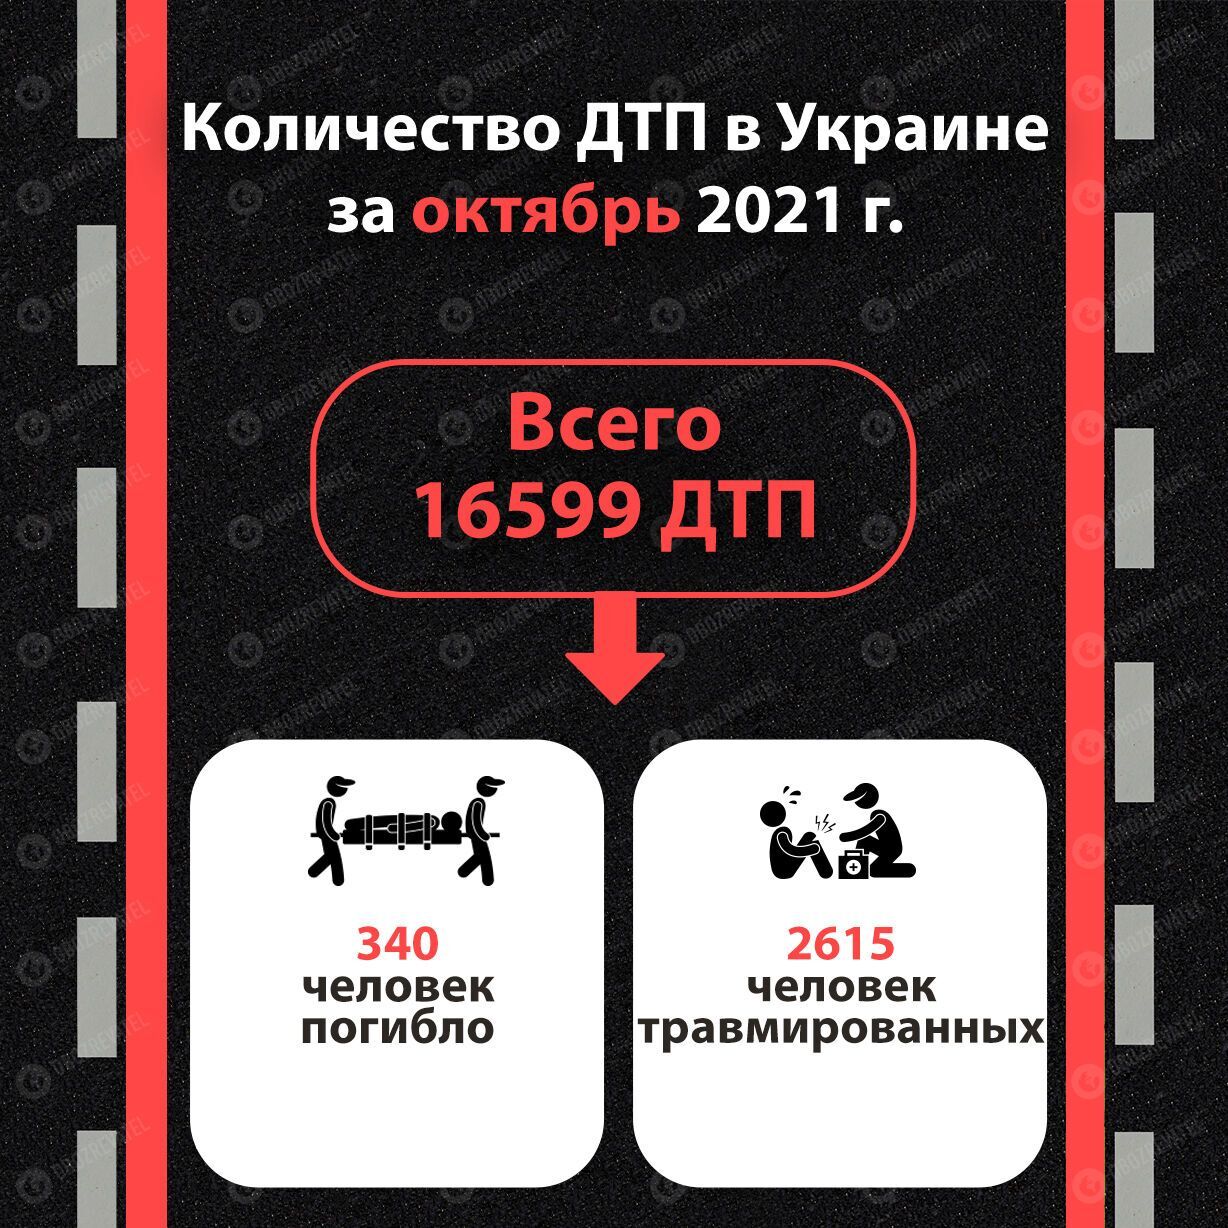 Статистика ДТП в Украине в октябре